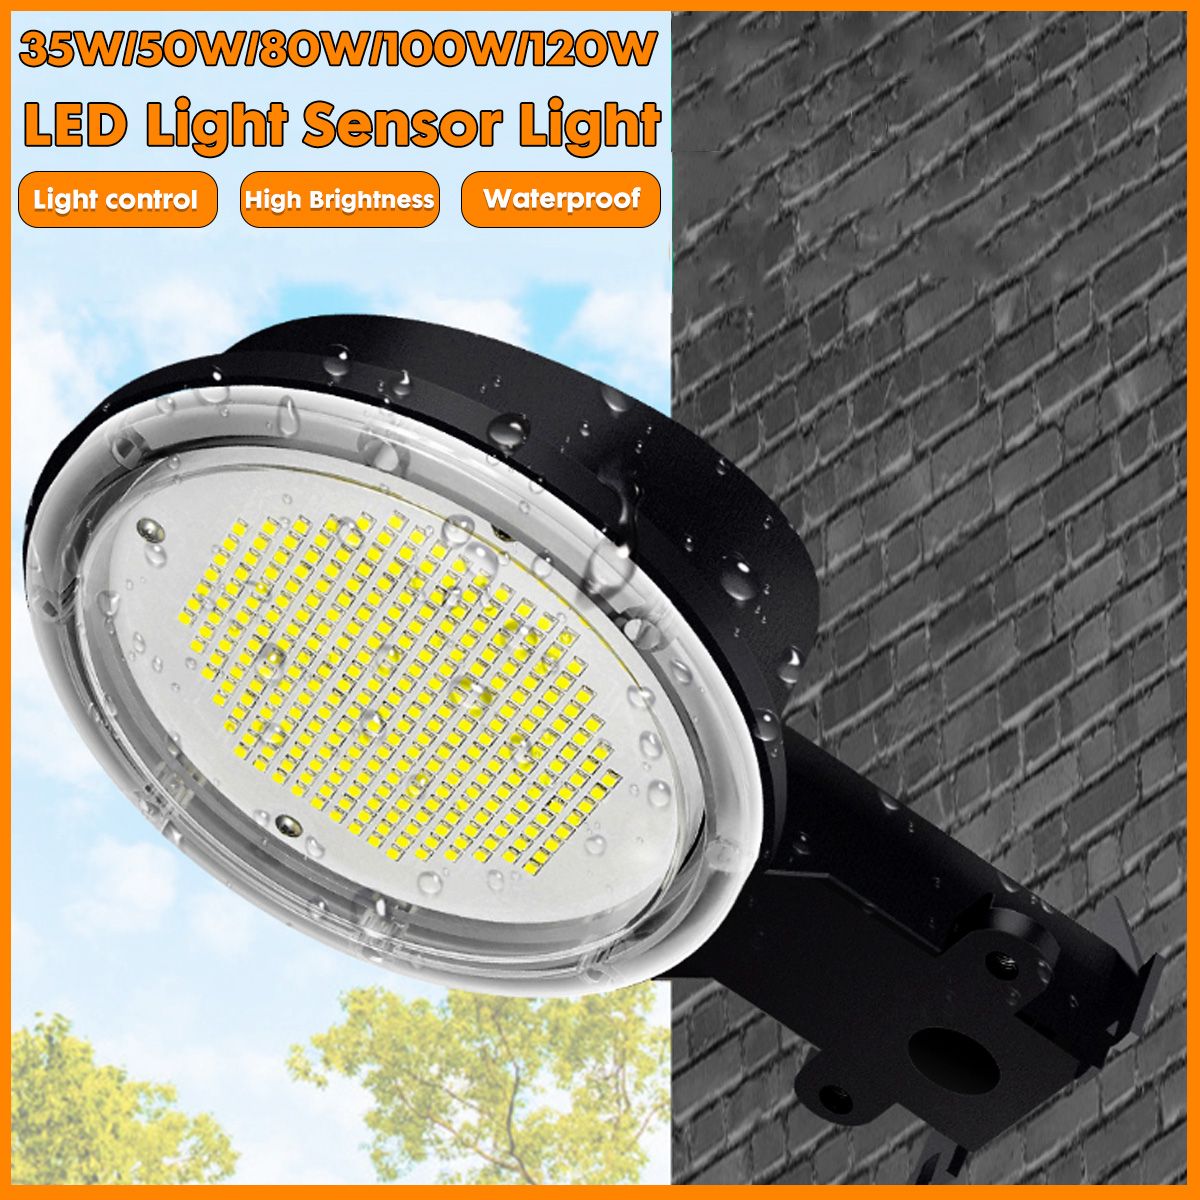 35W-50W-80W-100W-120W-LED-Solar-Street-Light-Motion-Sensor-Outdoor-IP65-Commercial-Garden-Lamp-1738426